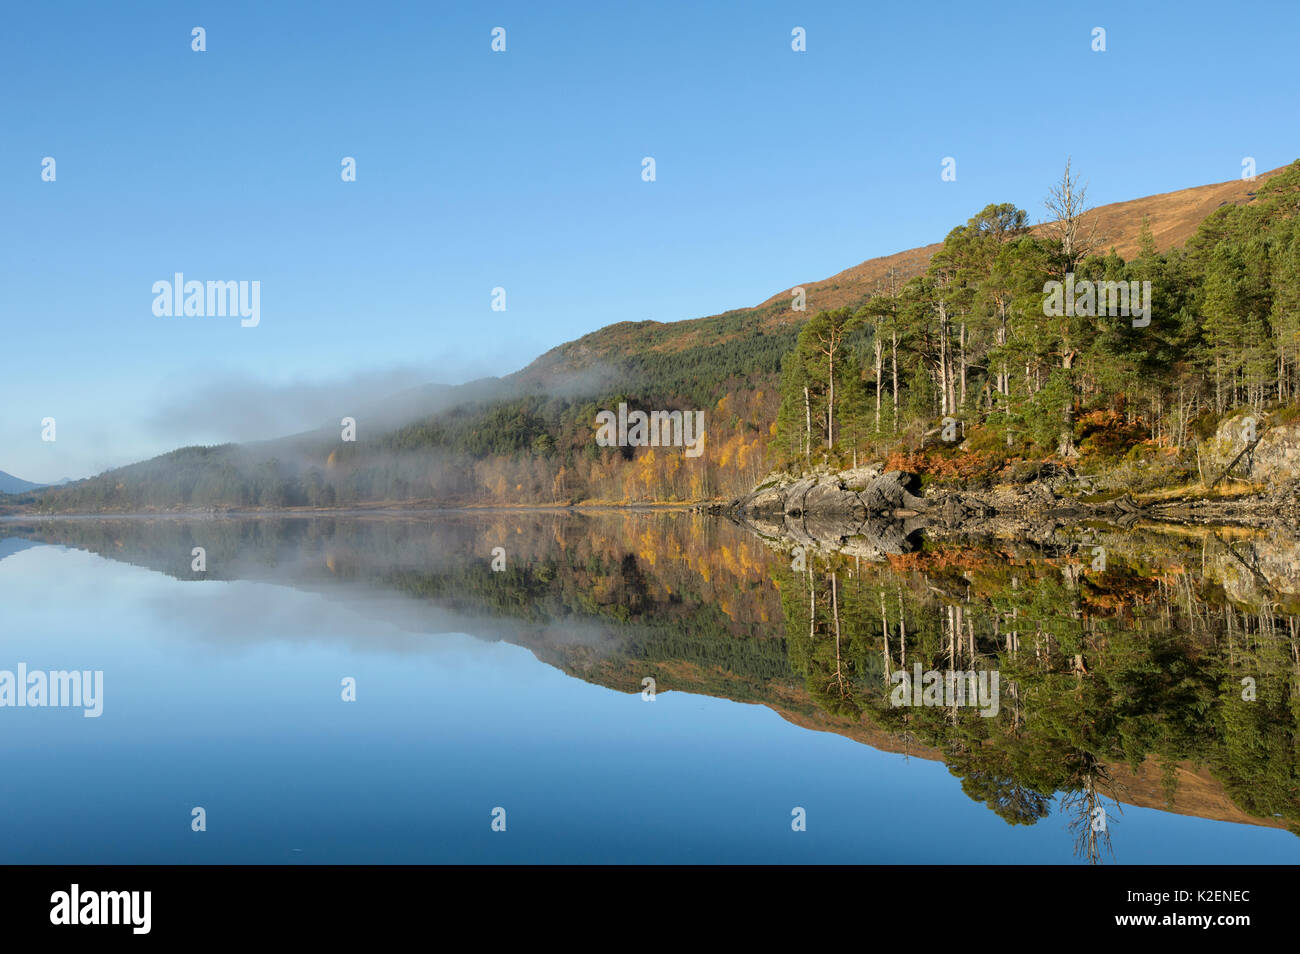 Pin sylvestre (Pinus sylvestris) et la brume reflète dans Loch Beinn un&# 39 ; Mheadhoin, Glen Affric, Highlands, Ecosse, novembre 2014. Banque D'Images